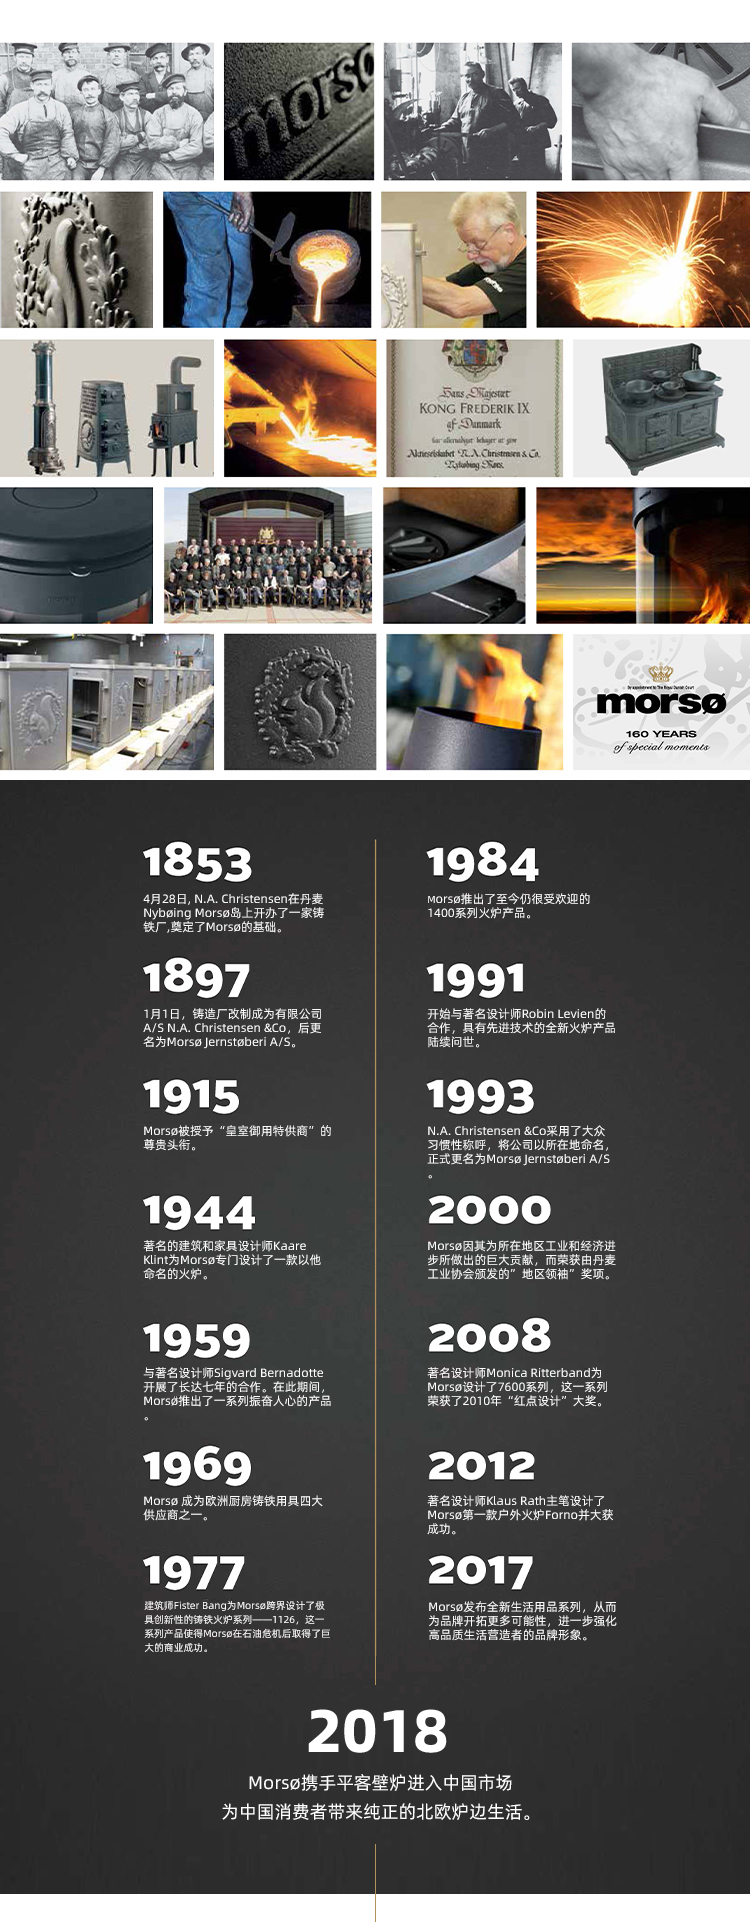 丹麦铸铁真火壁炉品牌-Morso2110.jpg